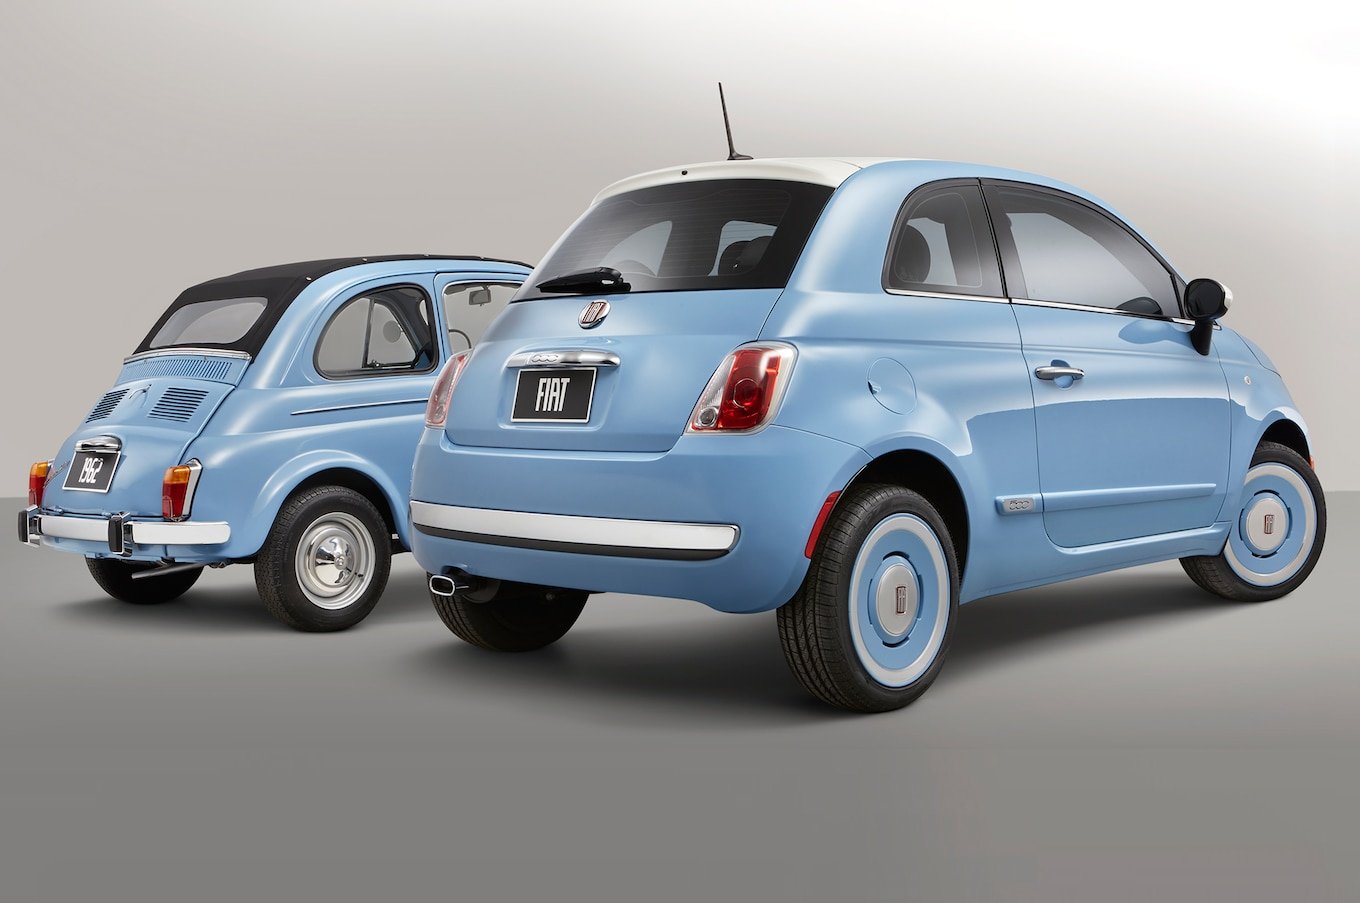 2015-Fiat-500-1957-Edition-rear-three-quarter-01.jpg